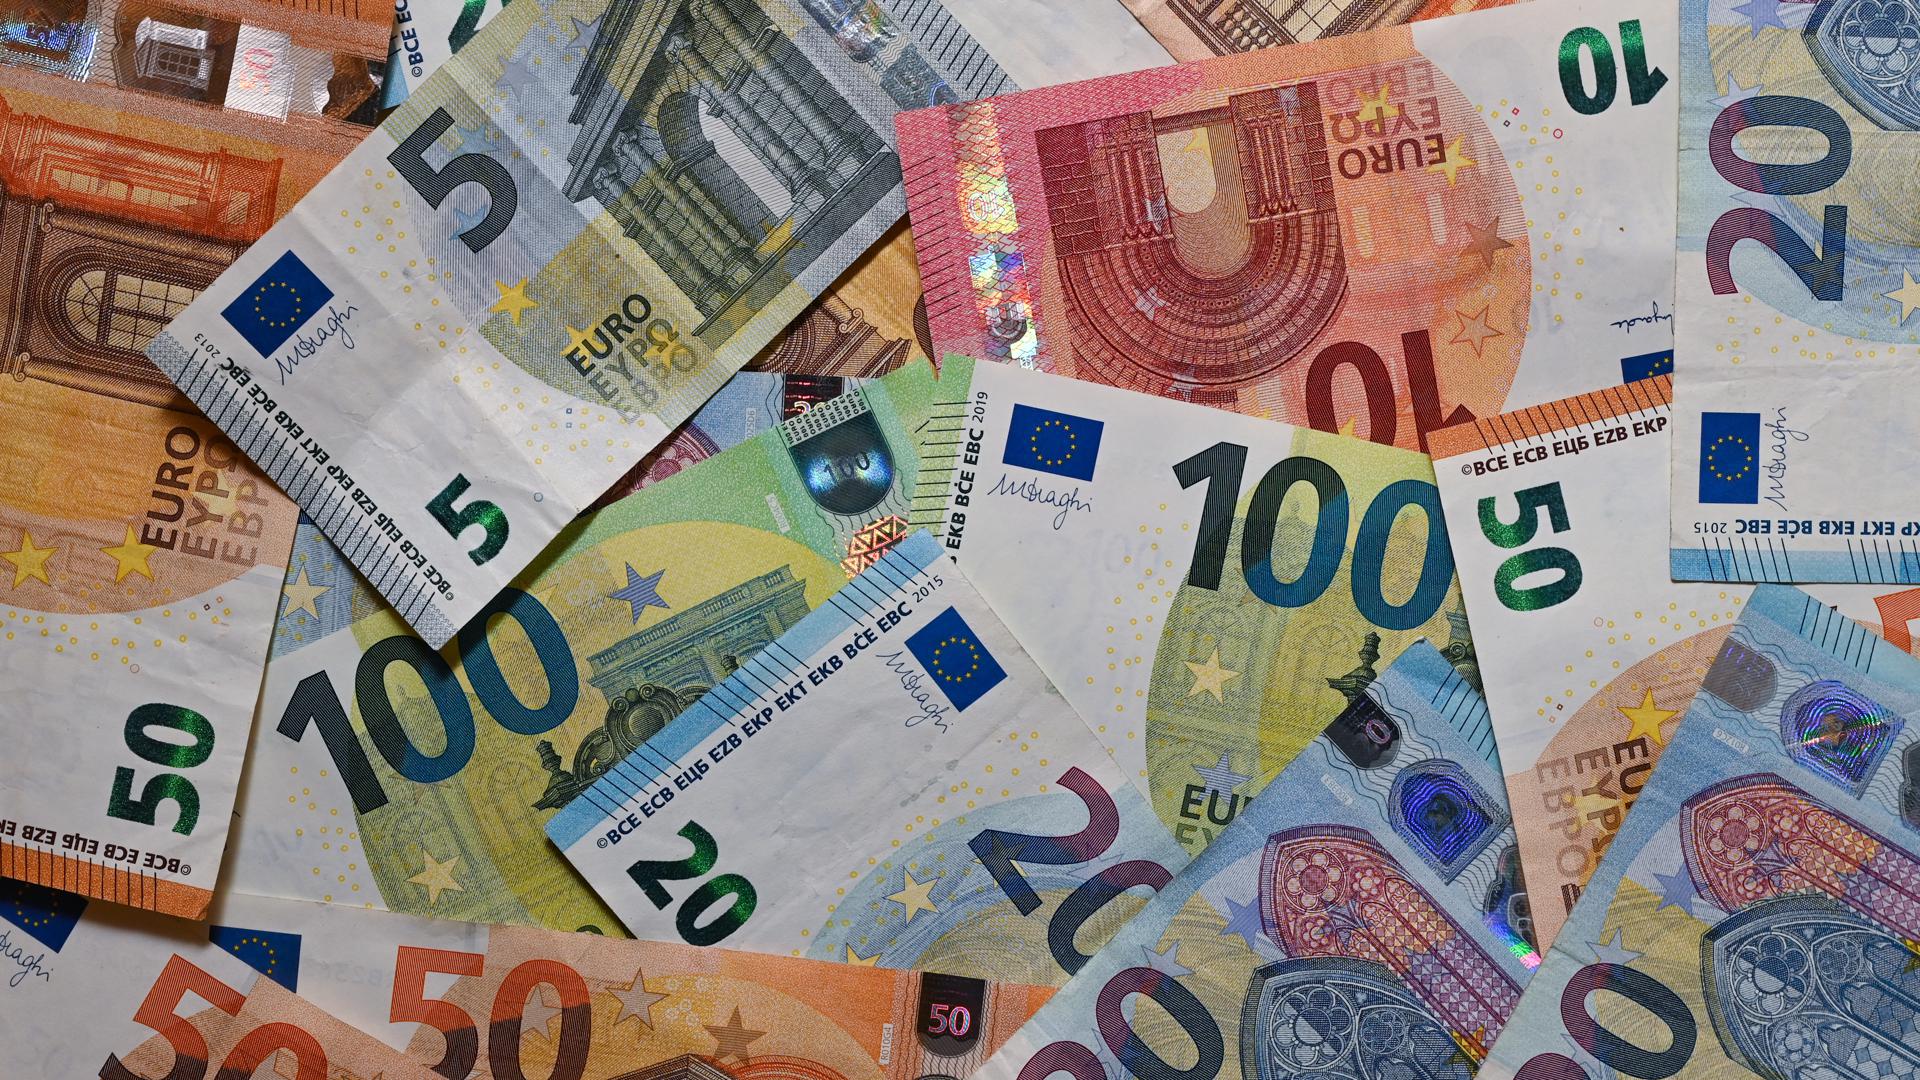 ILLUSTRATION: Eurobanknoten liegen auf einem Tisch